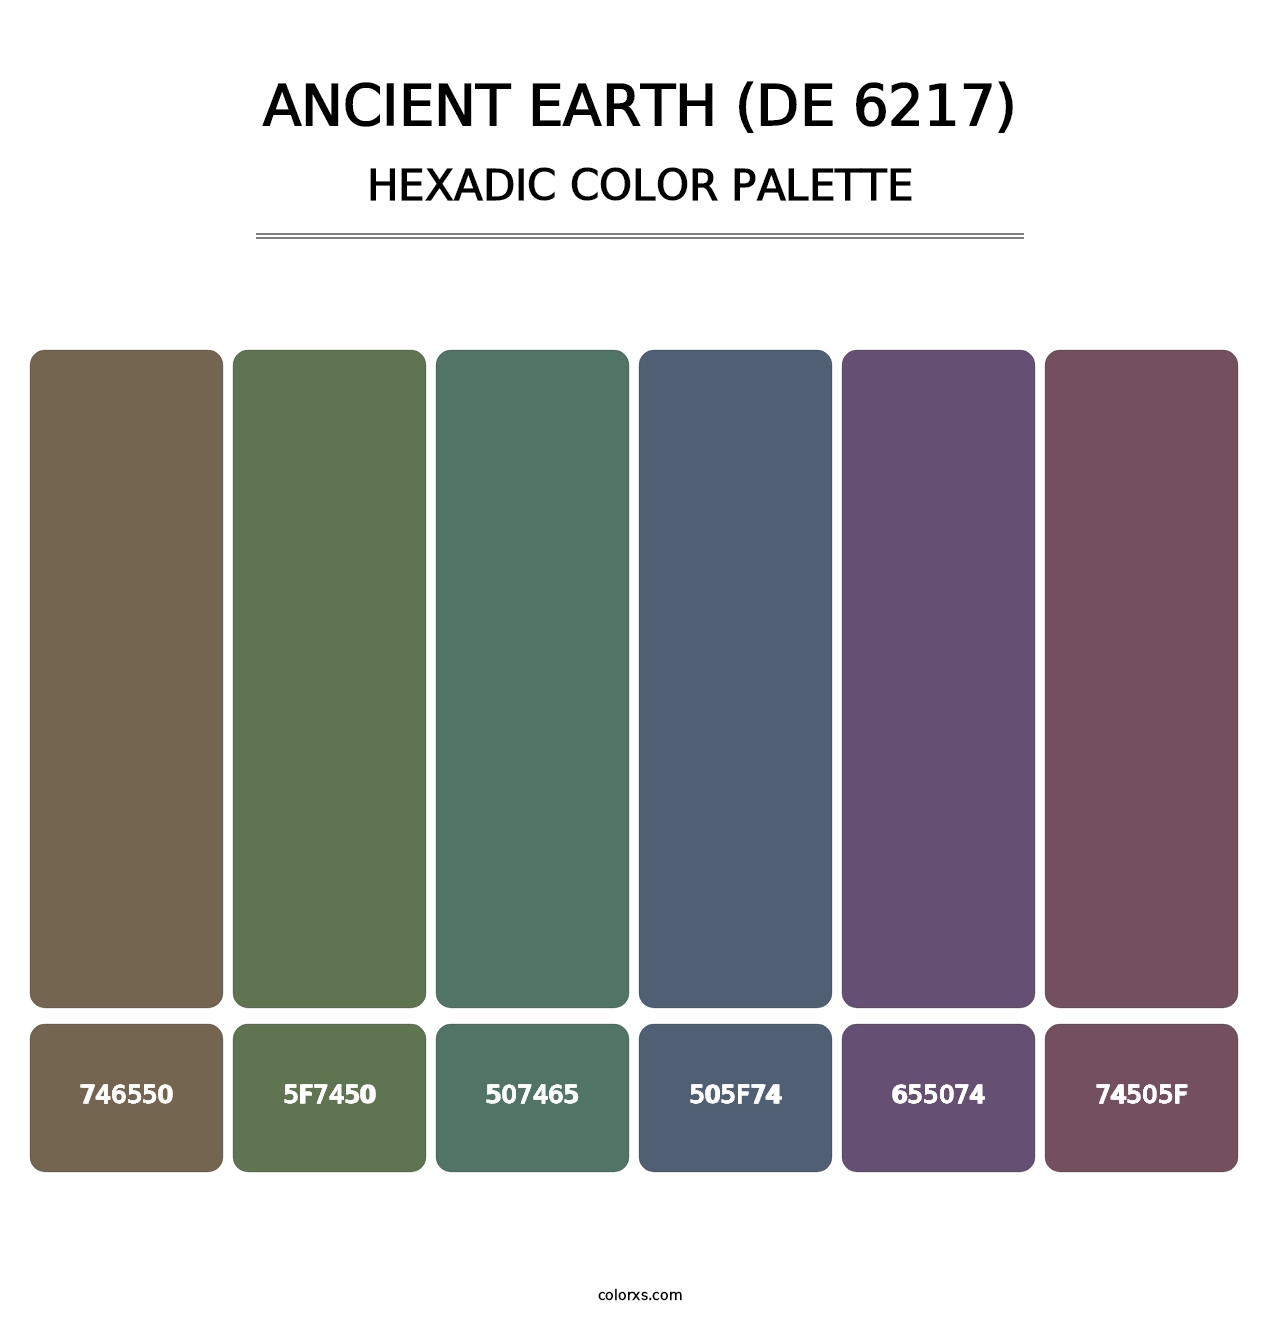 Ancient Earth (DE 6217) - Hexadic Color Palette